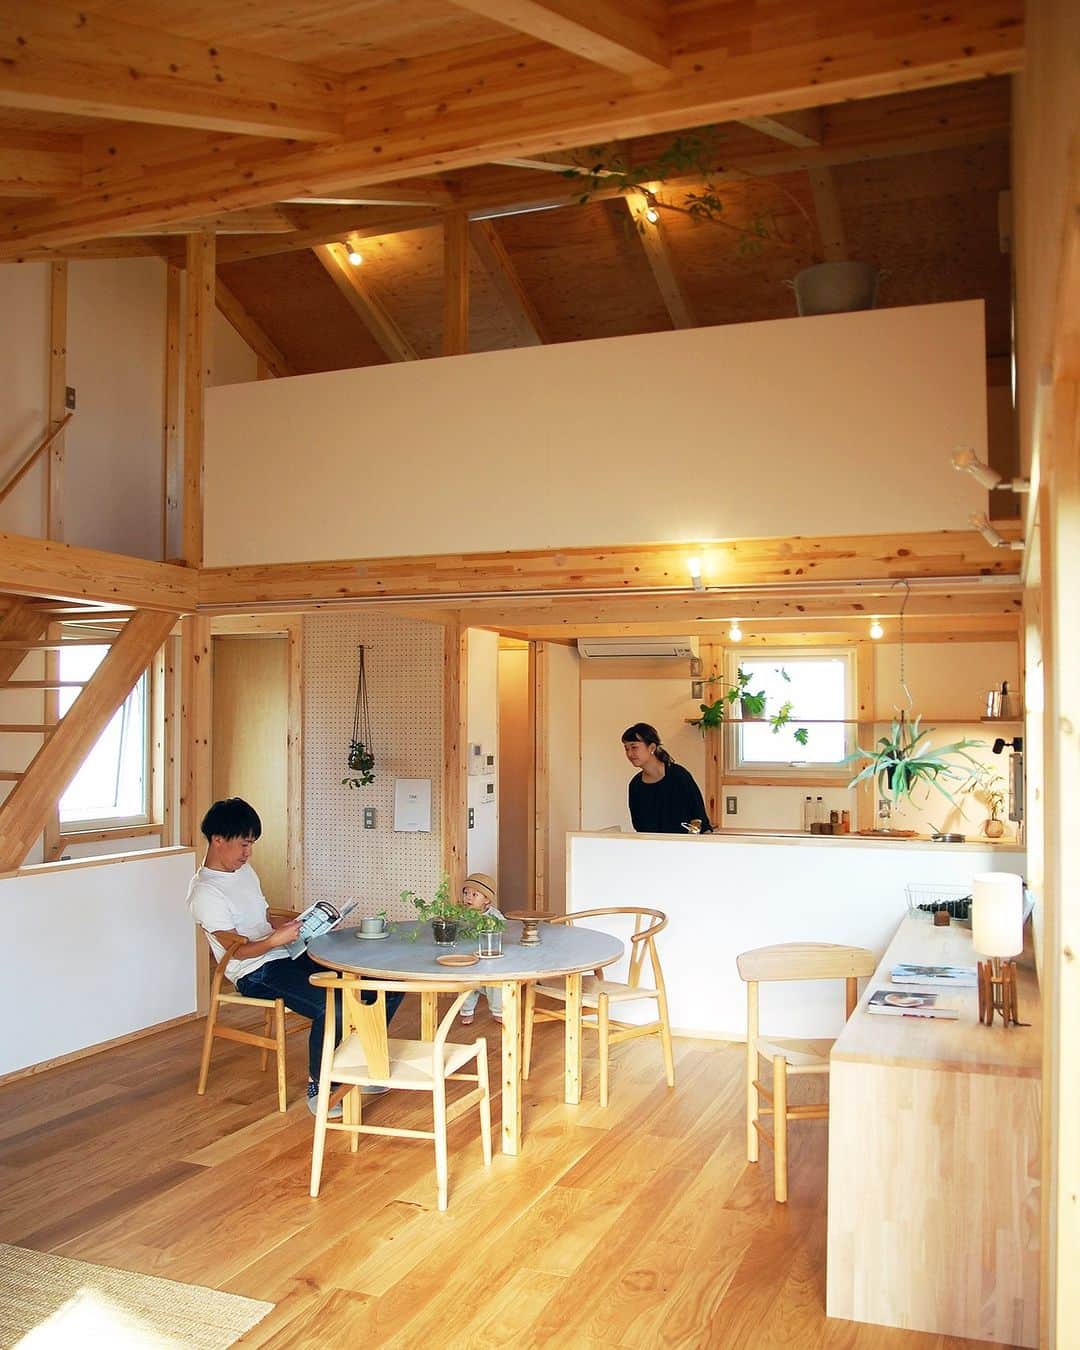 田中工務店／大阪／木の家のインスタグラム：「. 木製テーブルは 天板だけグレーなのも 空間がしまって おしゃれな感じになります。  #tanakakomuten_kurashi  #tanakakomuten_interior   すべての人に、豊かな人生を。 @tanaka.komuten は、大切な人との豊かな時間という価値を、設計士とつくる木の家づくりを通してお客様にお届けしたい、大阪北摂・吹田市にある工務店です。ぜひフォローください🤲🏻✨  誰も教えてくれない『住まいのレシピ』をメルマガ📮で好評発信中。詳細は @sumai.no.recipe をご覧ください。  #工務店がつくる家 #家づくり記録 #家づくりアイデア #暮らしの記録 #田舎暮らし #木の家 #家づくり記録 #家づくりアイデア #暮らしの記録 #田舎暮らし #育児日記 #北摂ママ #ベビスタグラム #部屋作り #おうちづくり #注文住宅 #大阪注文住宅 #新築 #マイホーム #マイホーム #インドアグリーン #グリーンのある暮らし #観葉植物のある暮らし #植物のある暮らし  #丁寧な暮らし ＃interior #インテリア  @hokusetsu_camp 絶賛応援中 北摂でキャンプをしよう🏕✨」